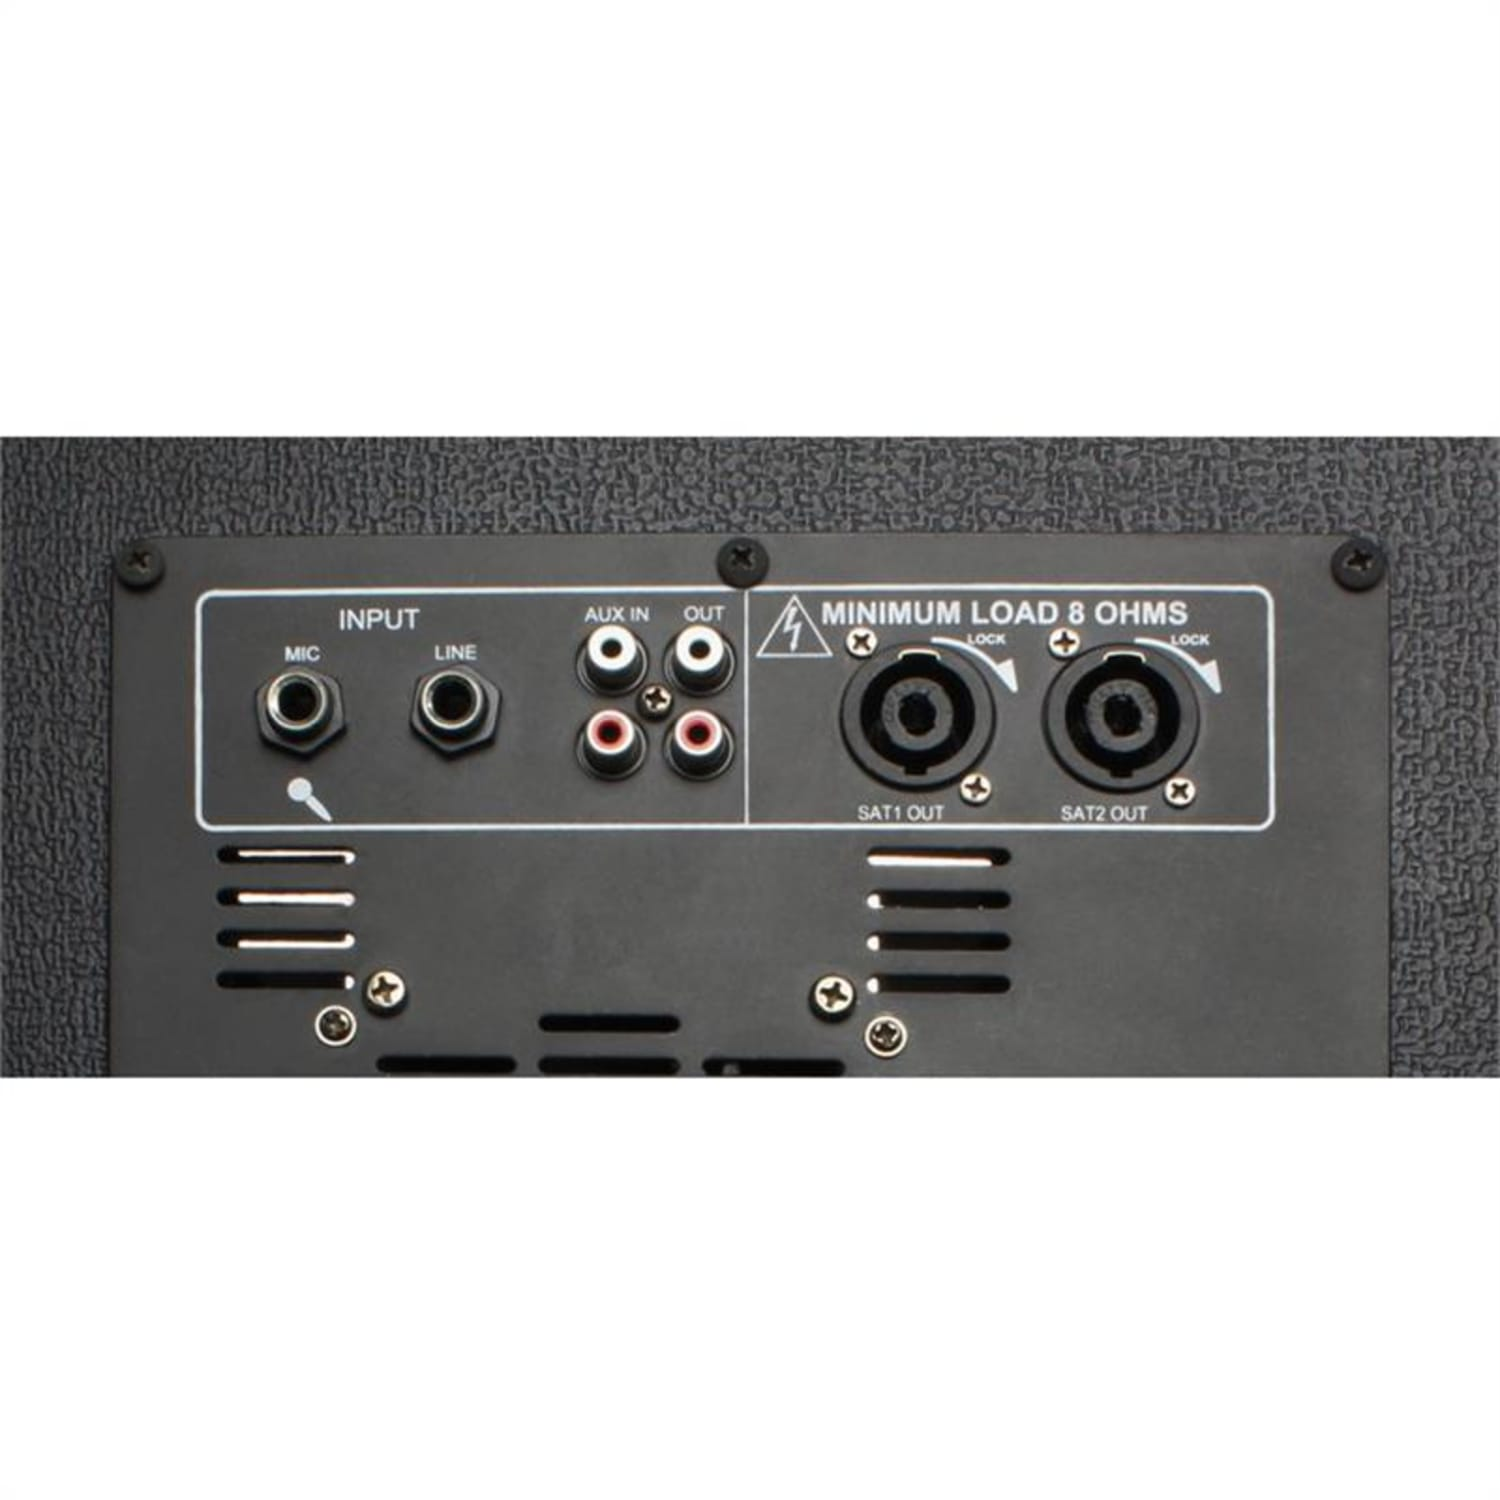 VX840BT PA-Lautsprecher-Set, VONYX schwarz